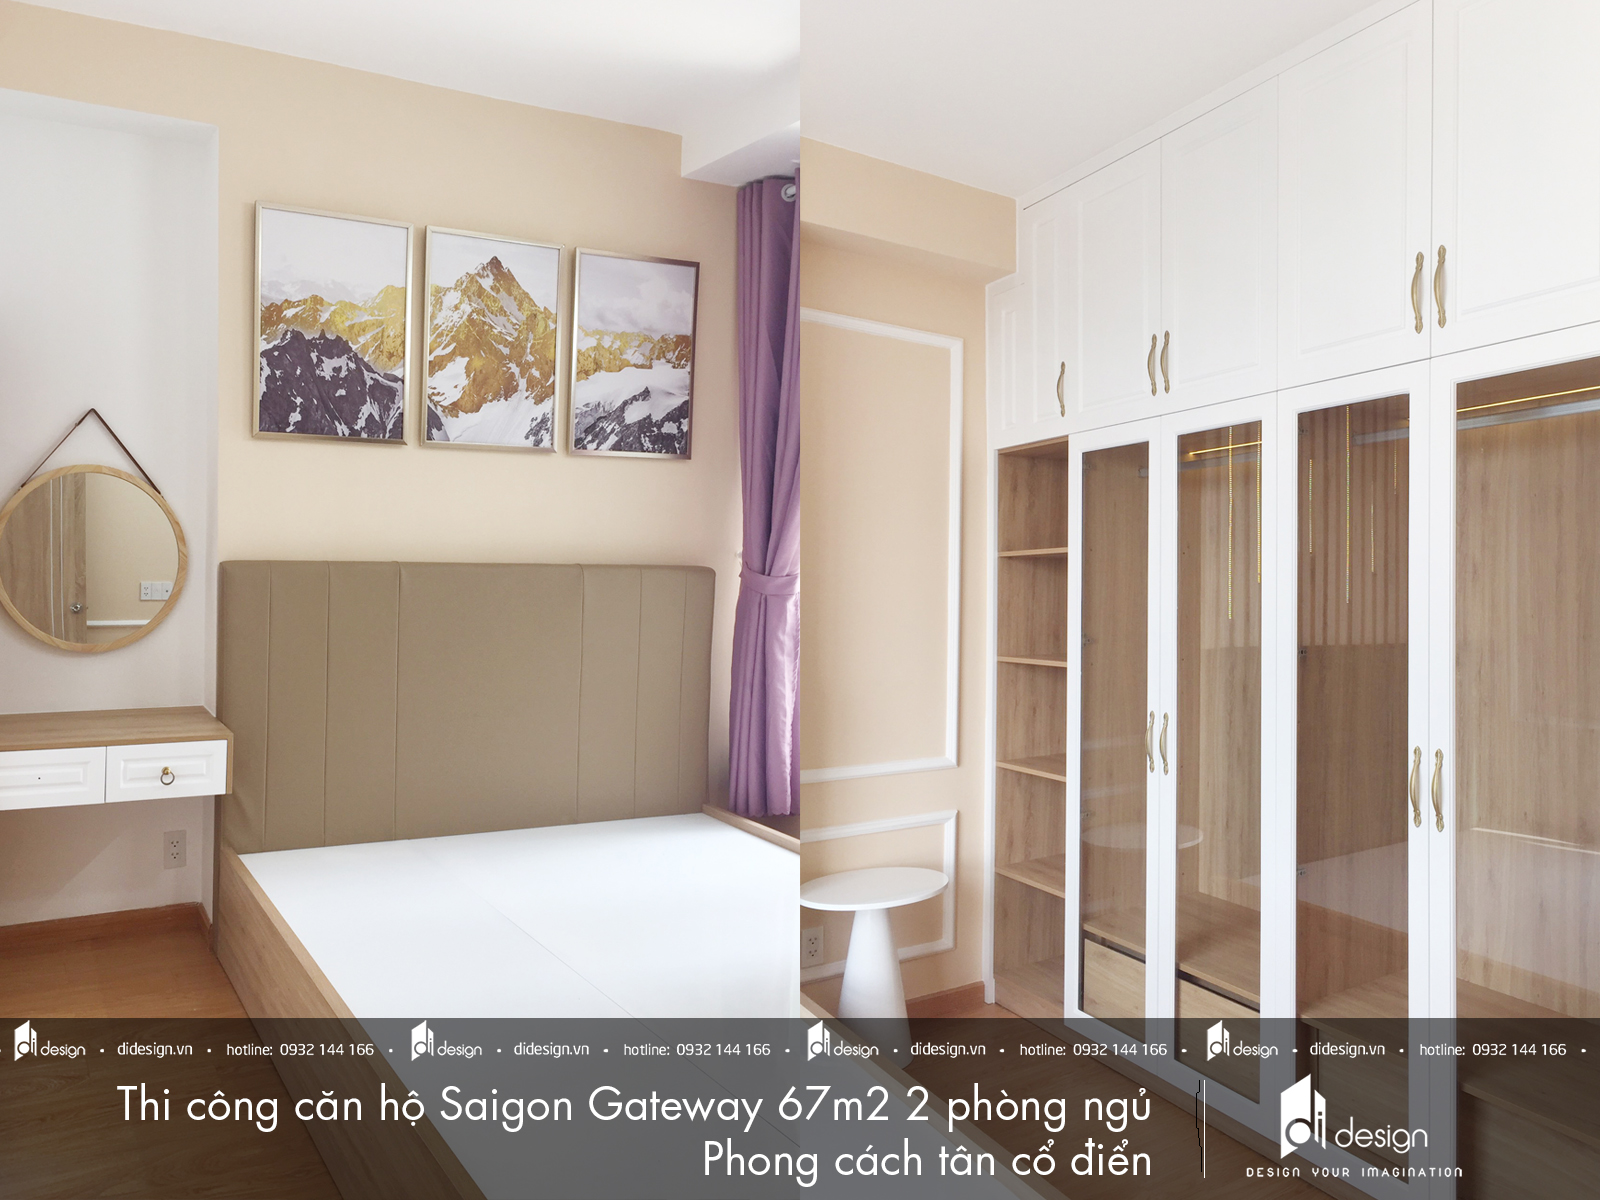 Thi công nội thất căn hộ Saigon Gateway 67m2 phong cách tân cổ điển